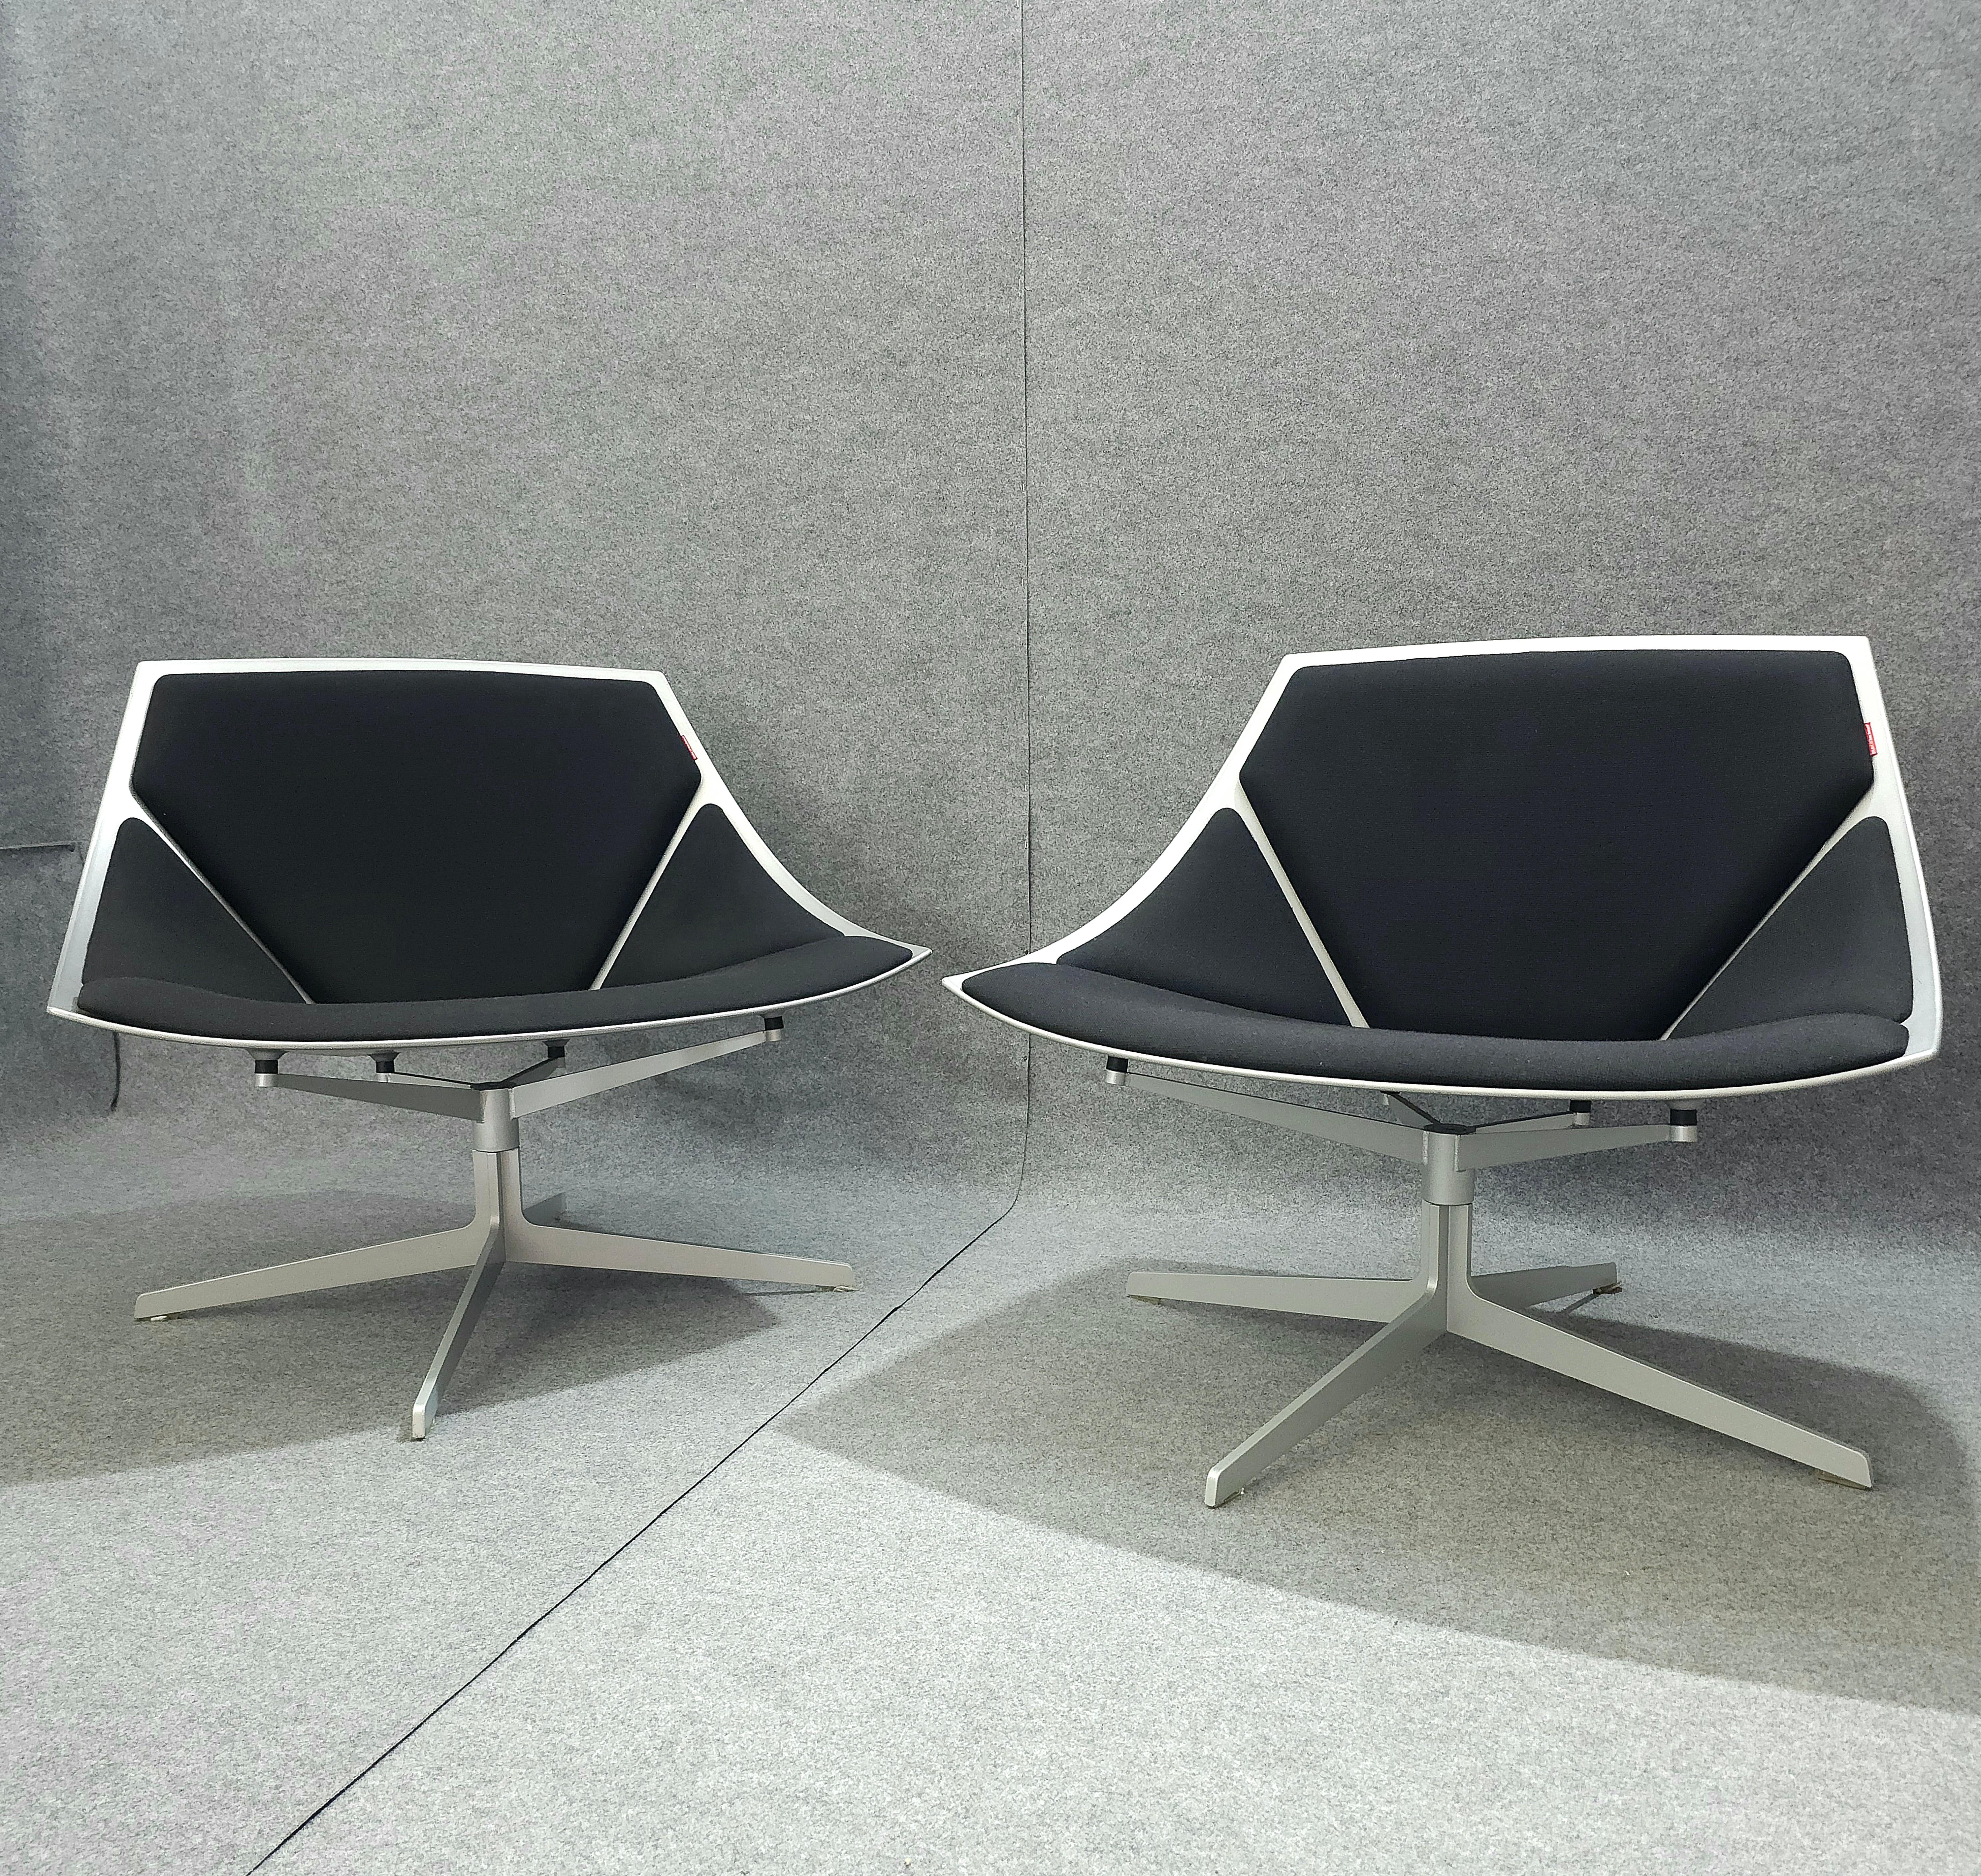 Ensemble de 2 fauteuils/chaises pivotants de forme anatomique produits au Danemark dans les années 2000. Chaque fauteuil/fauteuil a été réalisé avec une structure en plastique, un support quadripode en acier, une assise et un dossier incurvés avec